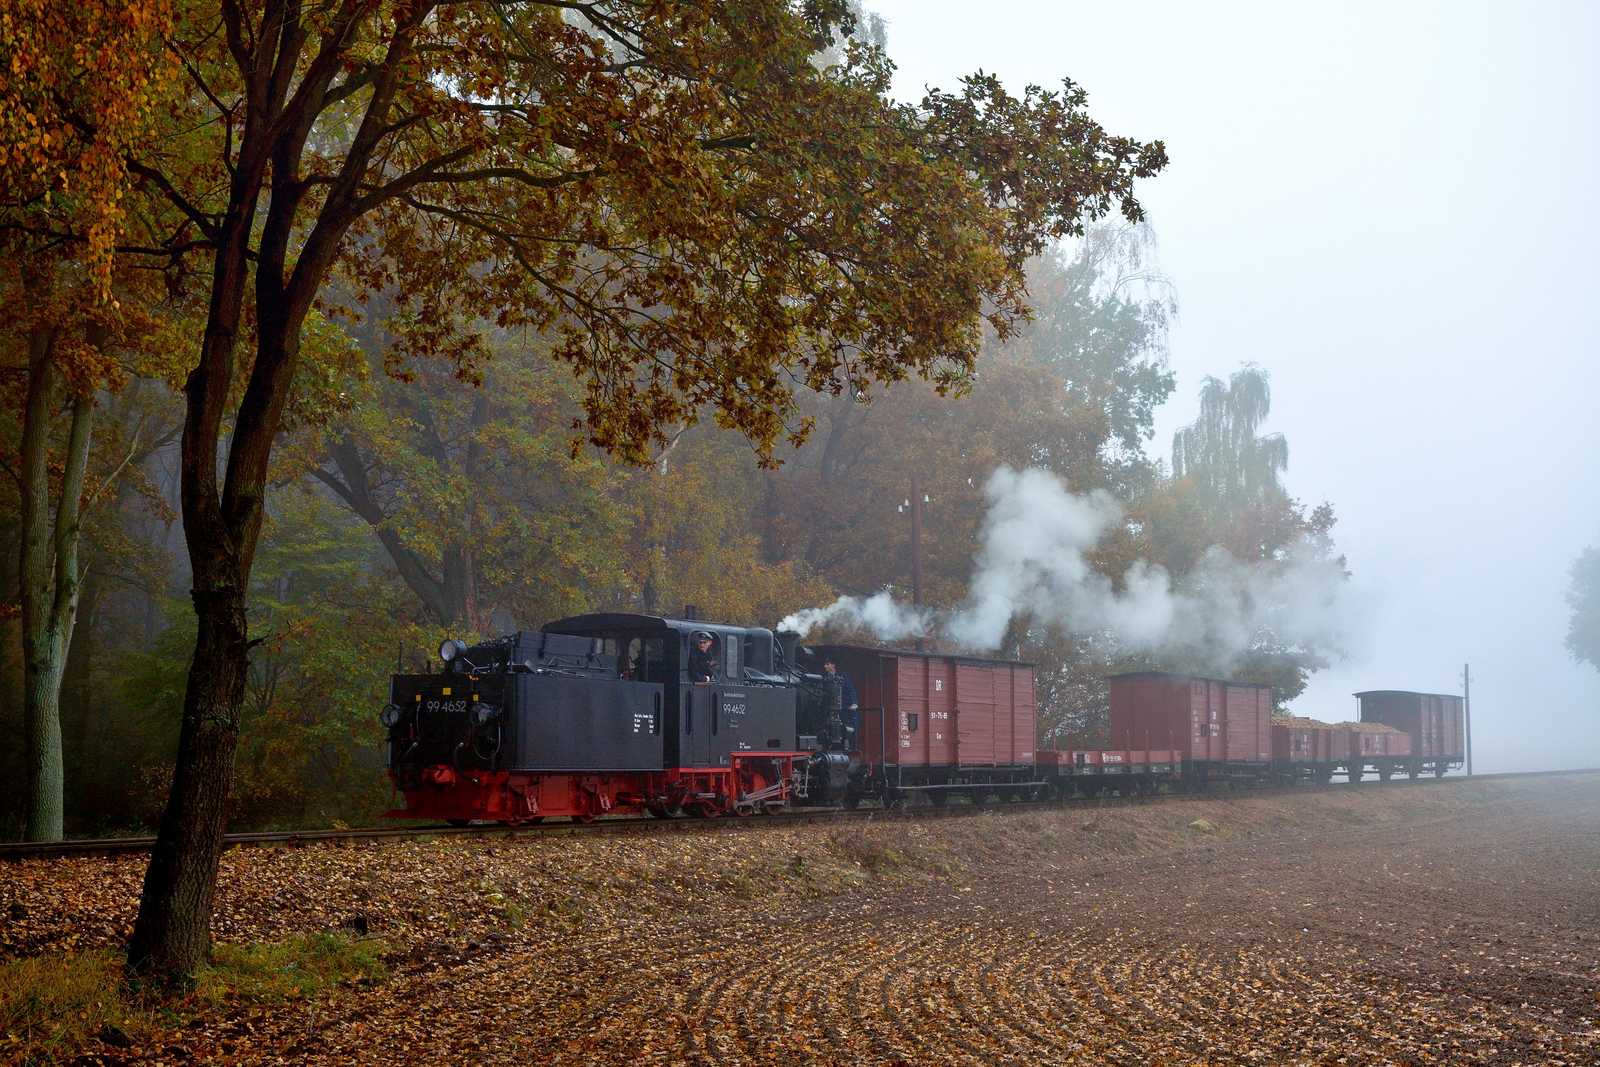 Am 30. Oktober lud der Verein Prignitzer Kleinbahnmuseum Lindenberg e. V. zum Güterzugtag beim Pollo ein – Dstg 8414 begegnet dort Joachim Jehmlich am Bahnübergang Tüchener Weg im herbstlichen Nebel.